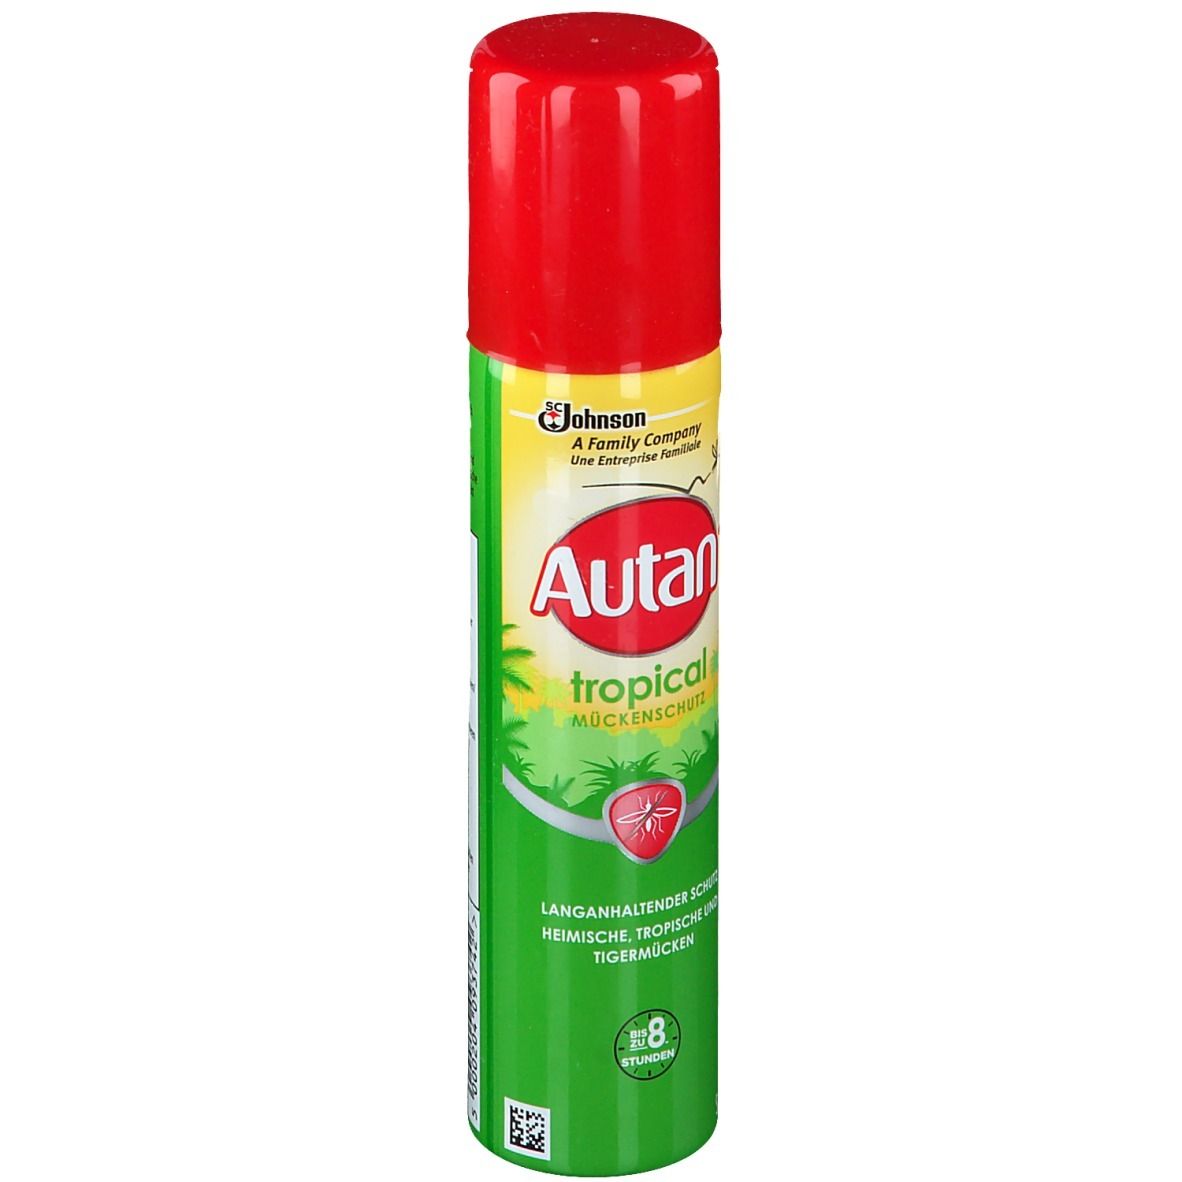 Autan ® Tropical Spray Aérosol